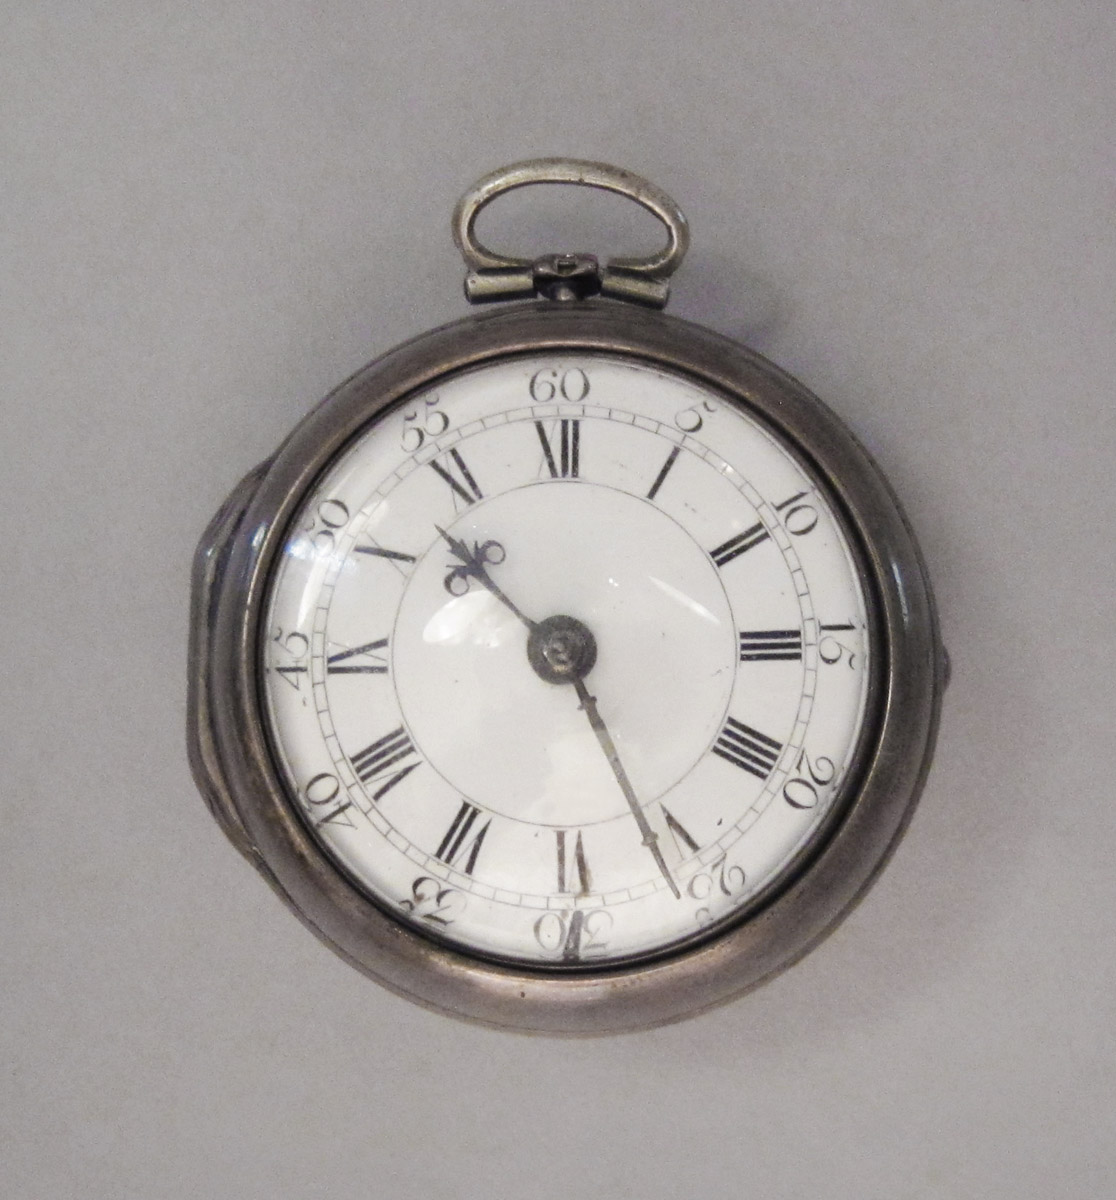 1956.0029.001 A-C Watch, upper surface